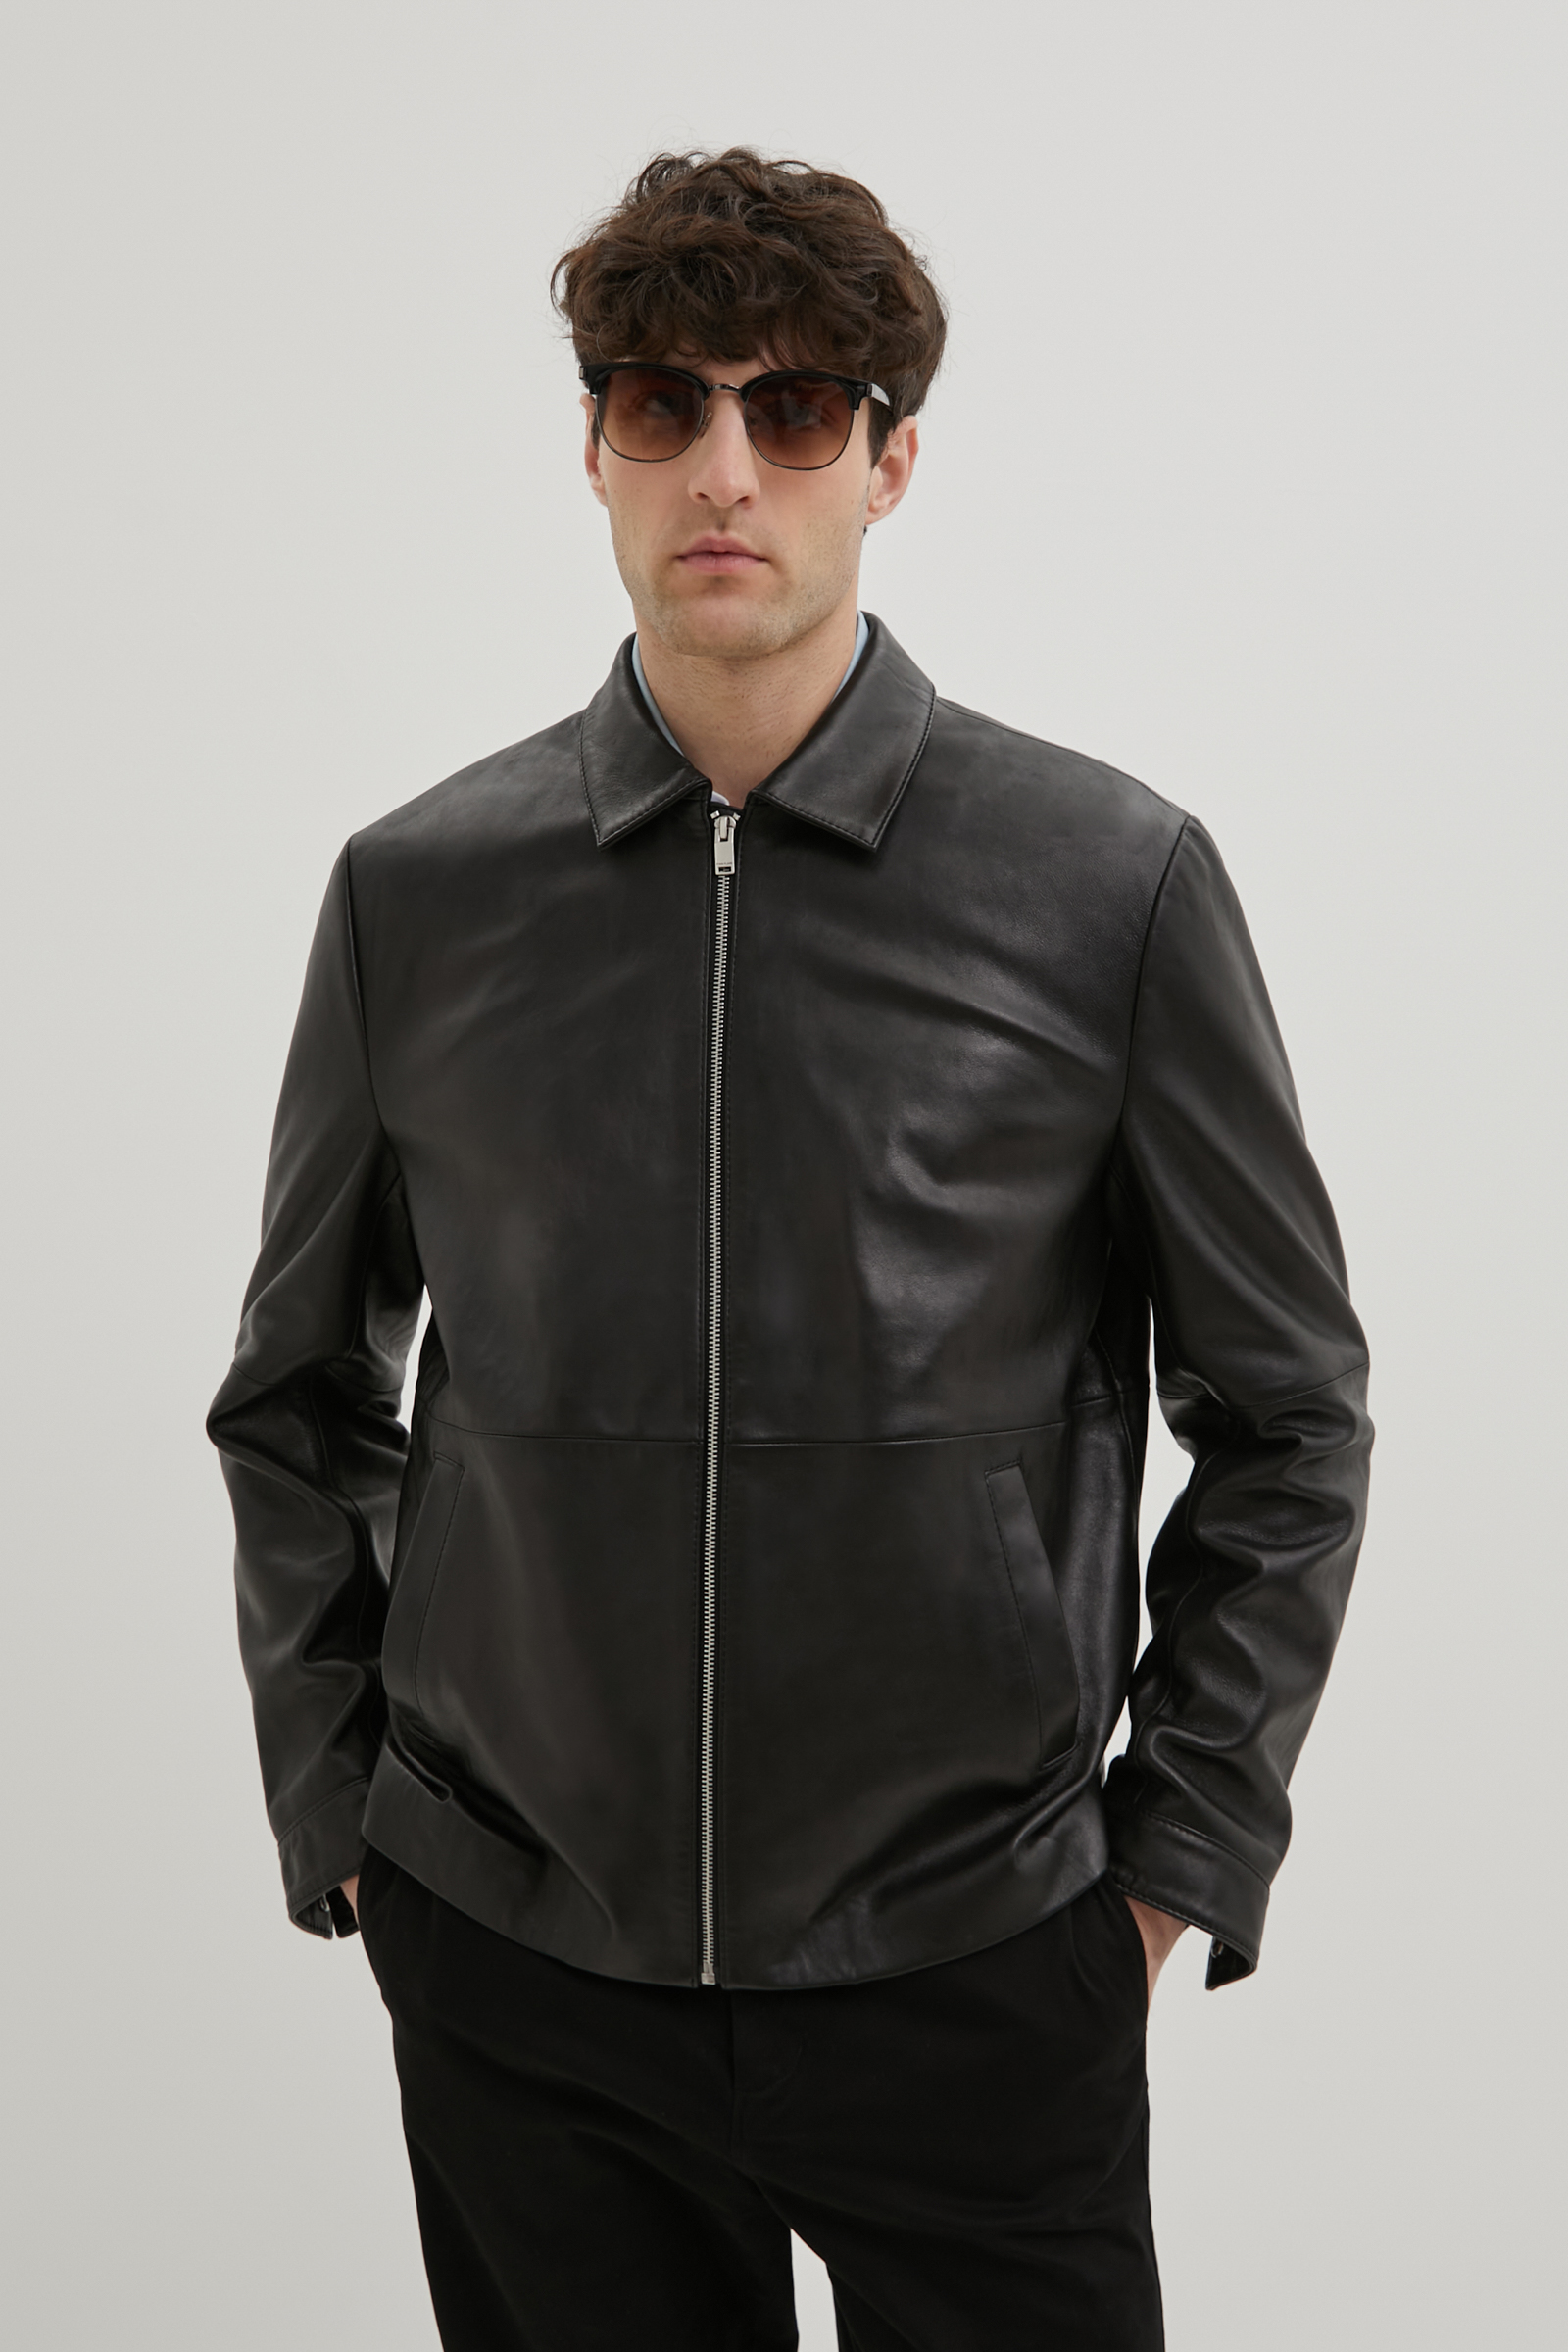 Кожаная куртка мужская Finn Flare FBE21800 черная S